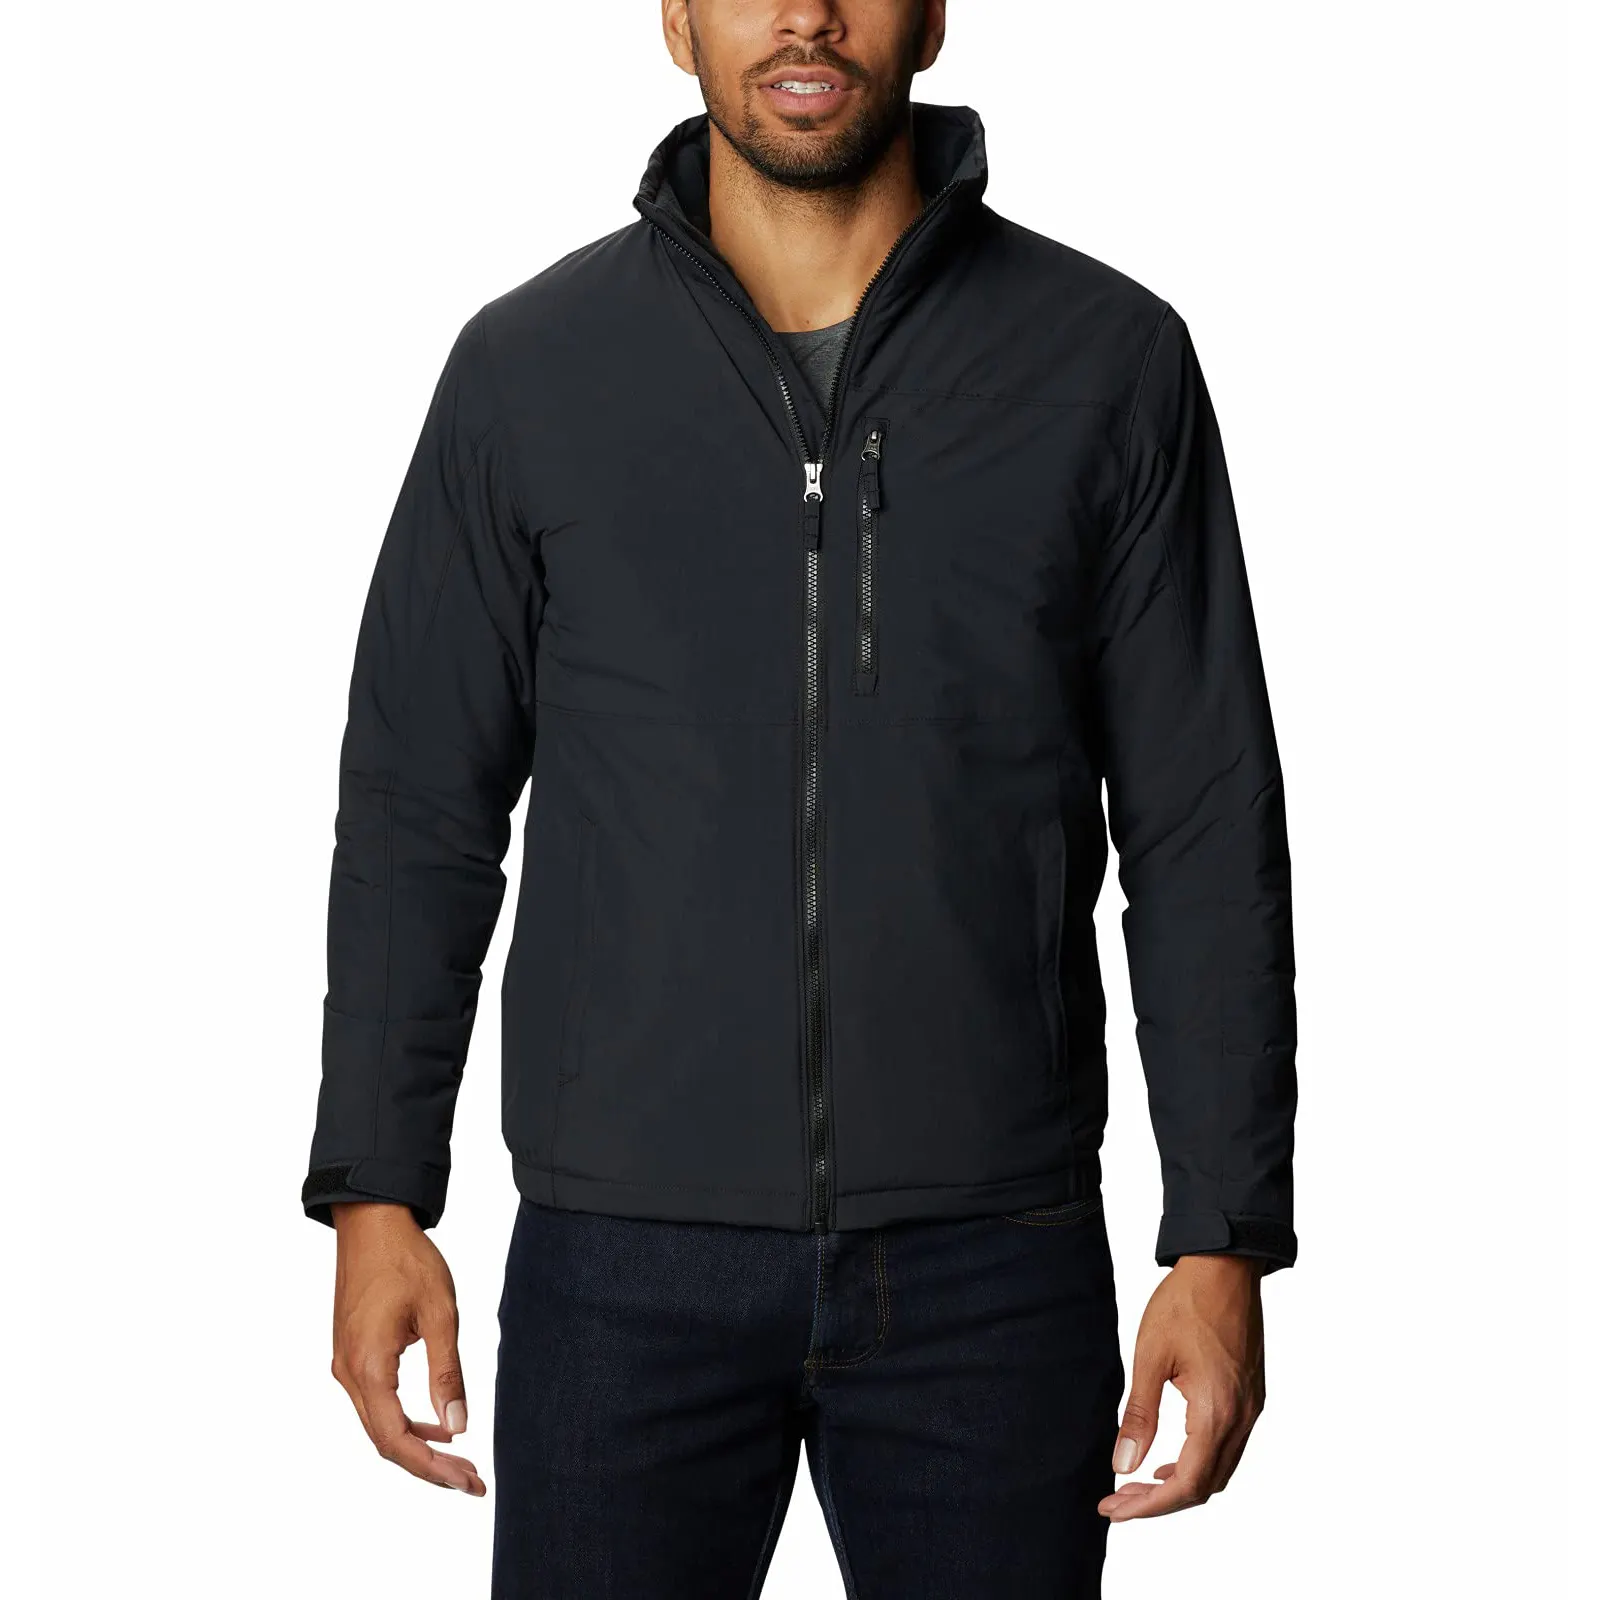 Nova moda ao ar livre homem jaqueta softshell personalizado térmica com capuz Outerwear casaco roupas